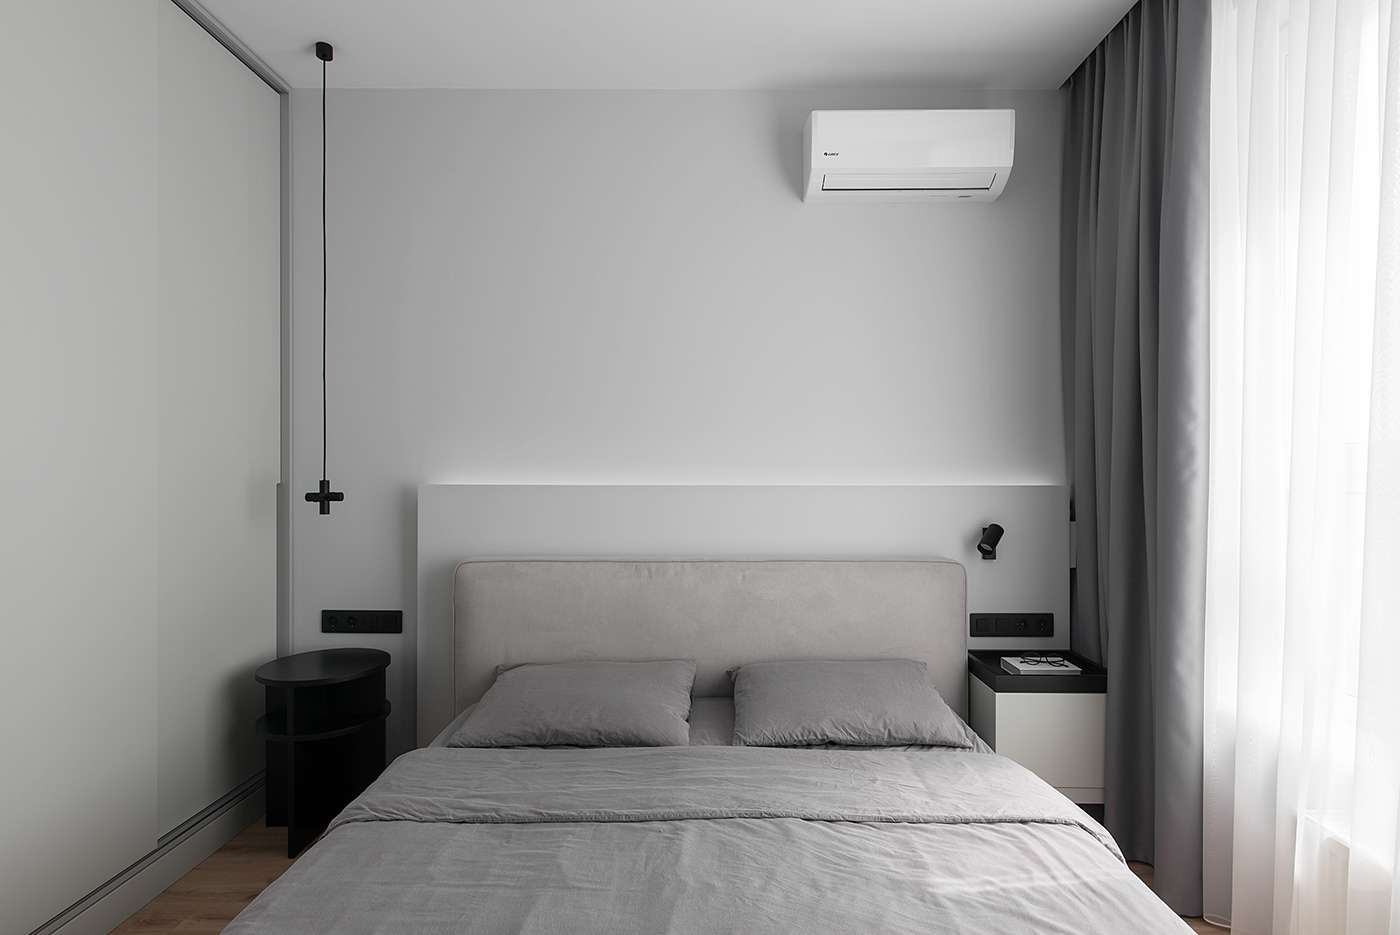 Không gian phòng ngủ đơn giản, hiện đại nhưng vẫn đảm bảo đầy đủ công năng sử dụng